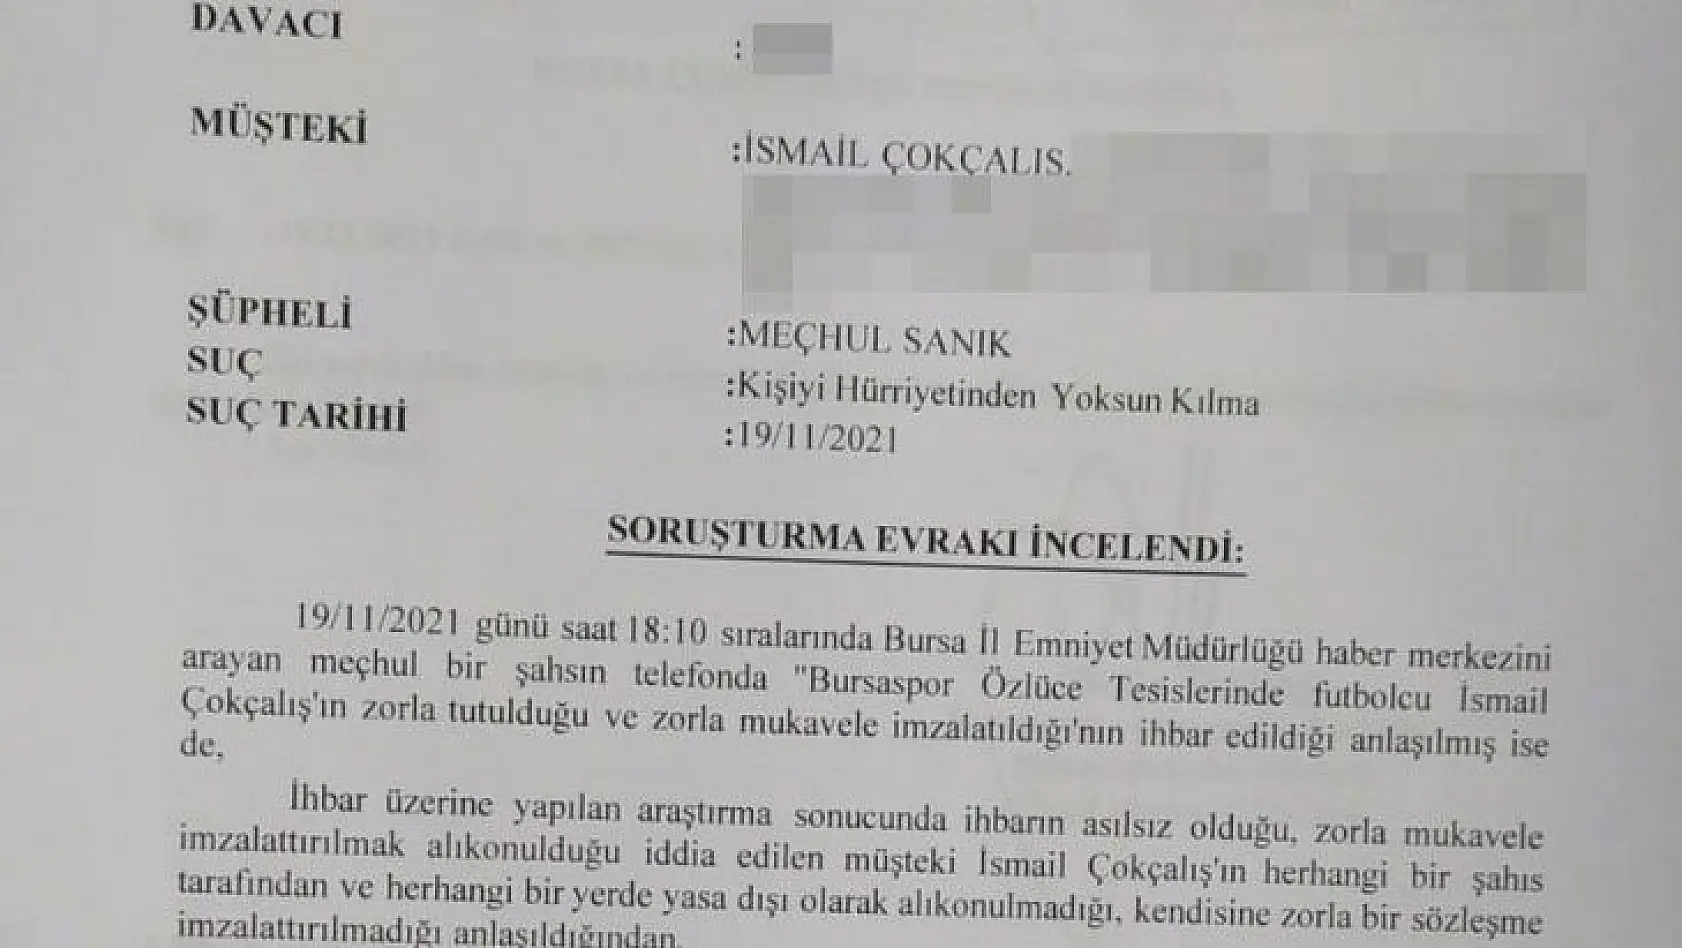 Bursaspor Kulübü'nden yeni İsmail Çokçalış açıklaması